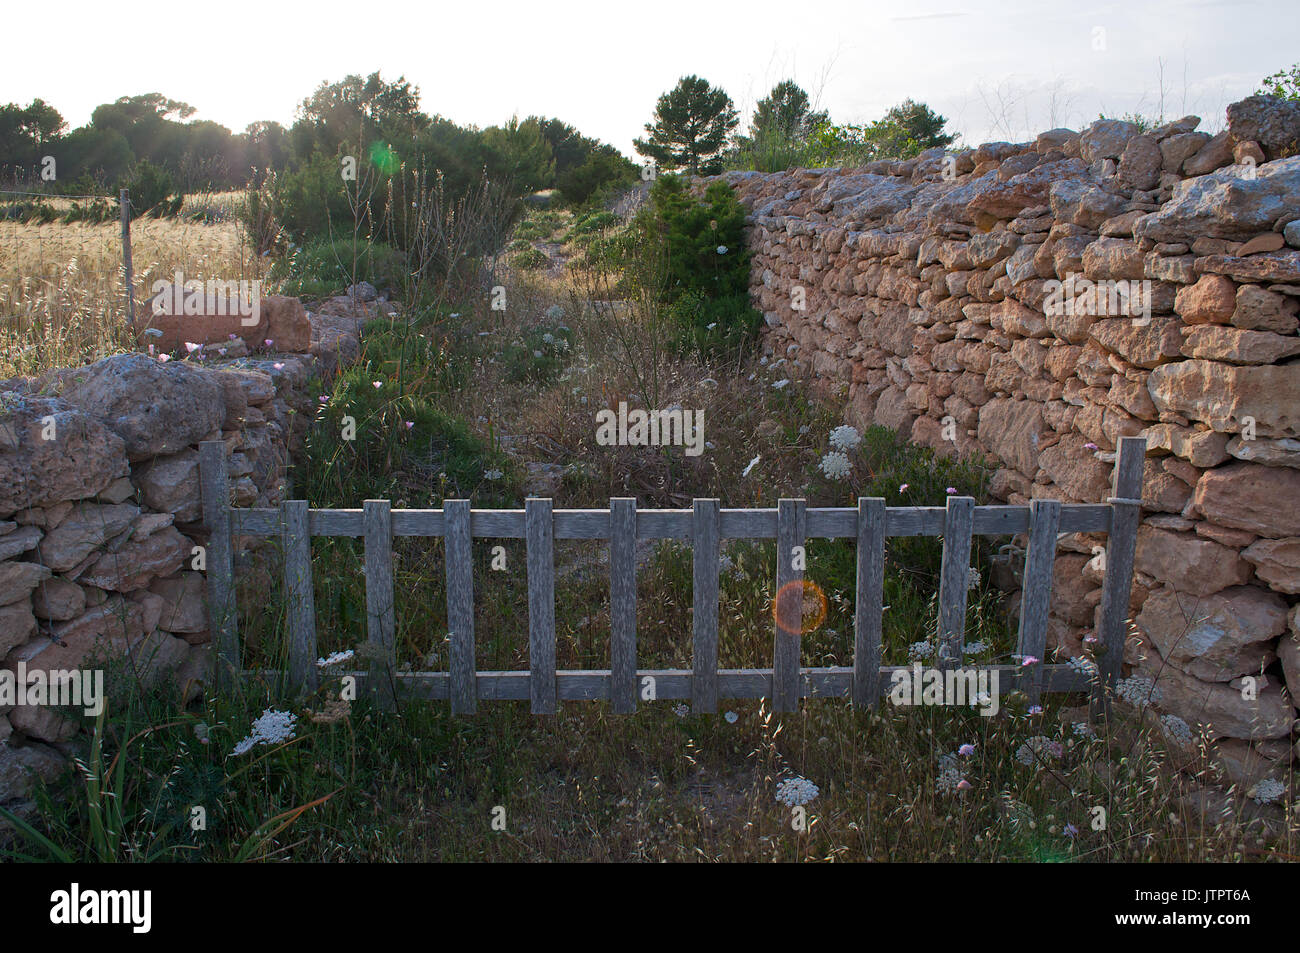 Un vecchio recinto in legno che chiude una via realizzata con le mura in pietra tradizionale a La Mola (Formentera, isole Baleari, Spagna) Foto Stock